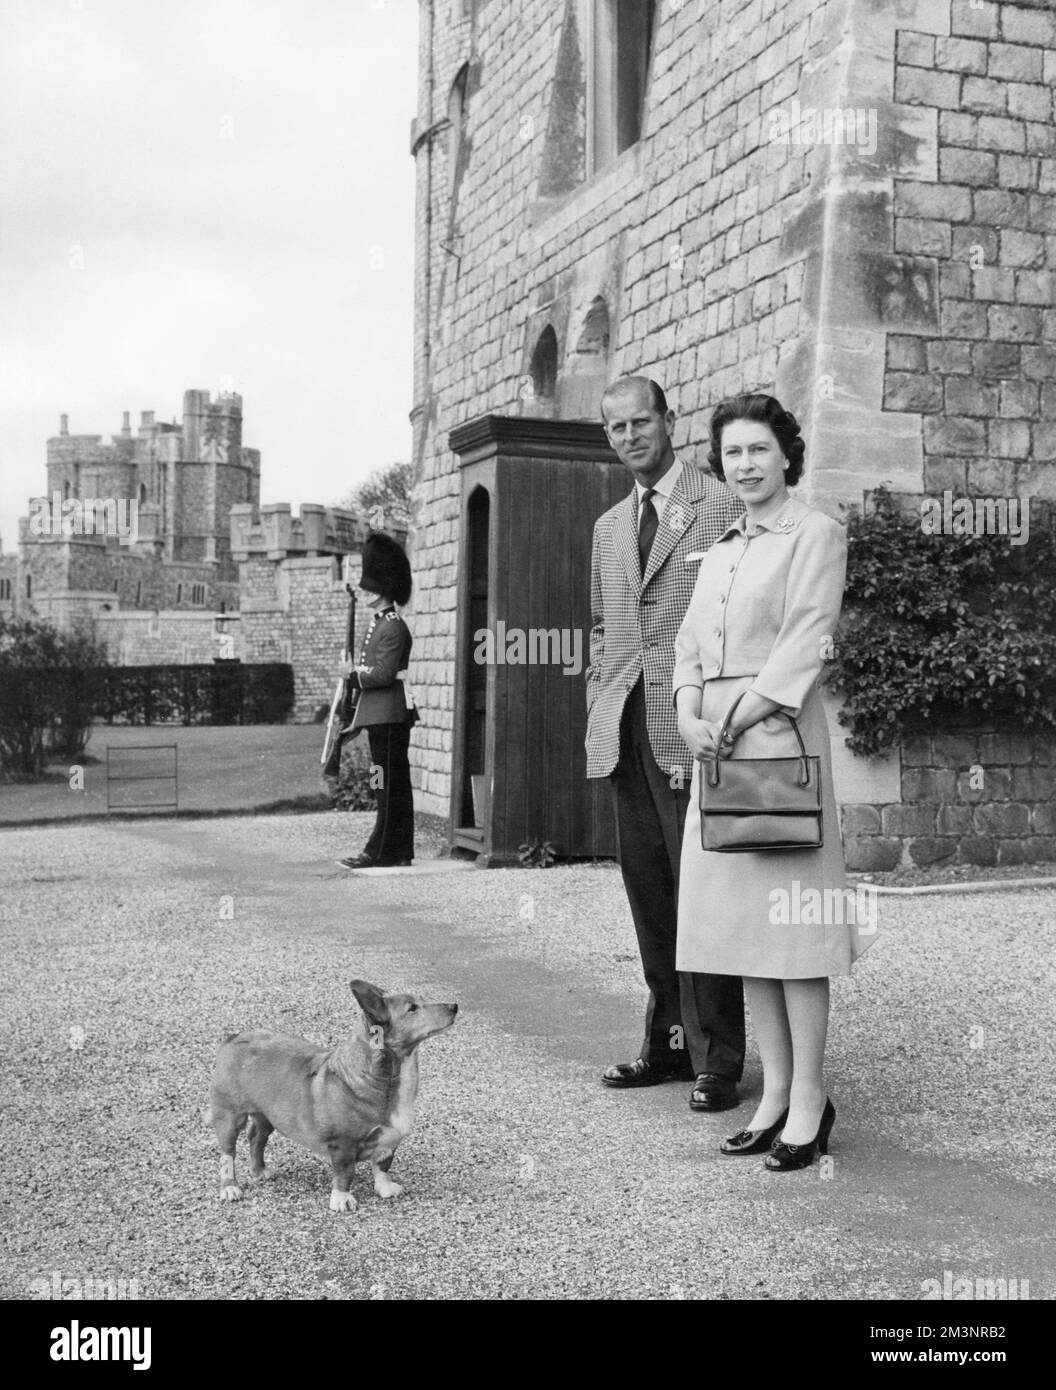 Königin Elizabeth II. Und Prinz Philip, Herzog von Edinburgh, wurden im Juni 1959 in der Nähe des King George IV. Tors in Windsor Castle fotografiert. Datum: 1959 Stockfoto